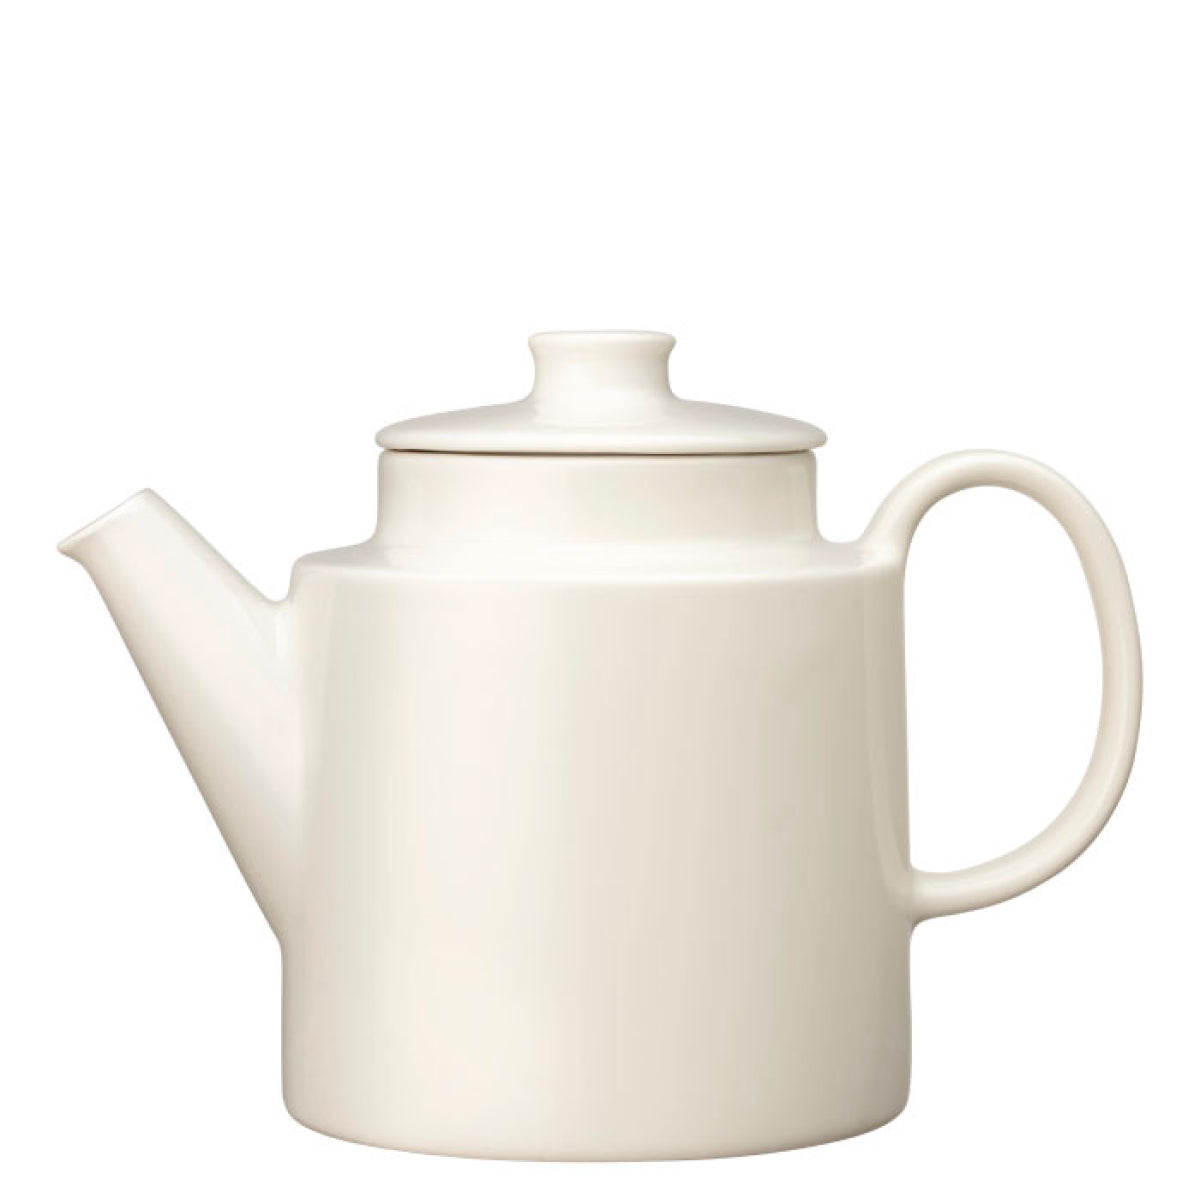 https://www.fjorn.com/cdn/shop/products/teema-teapot-1-qt-white-52.jpg?v=1649382524